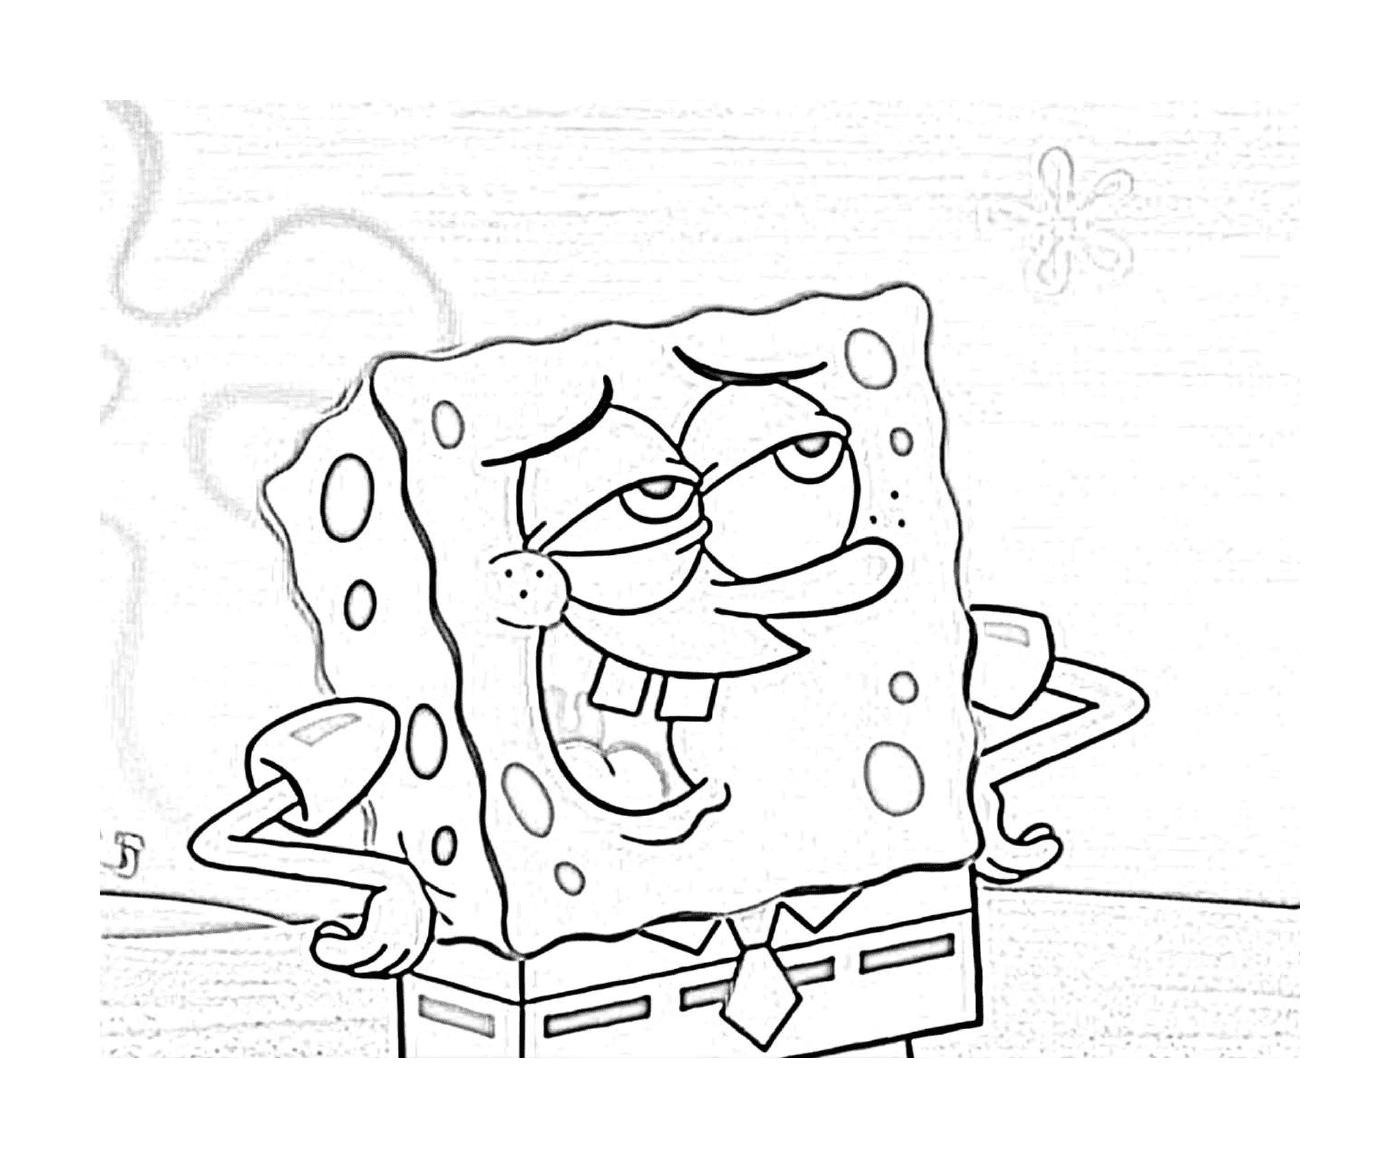  Spongebob, un personaggio dei cartoni animati 